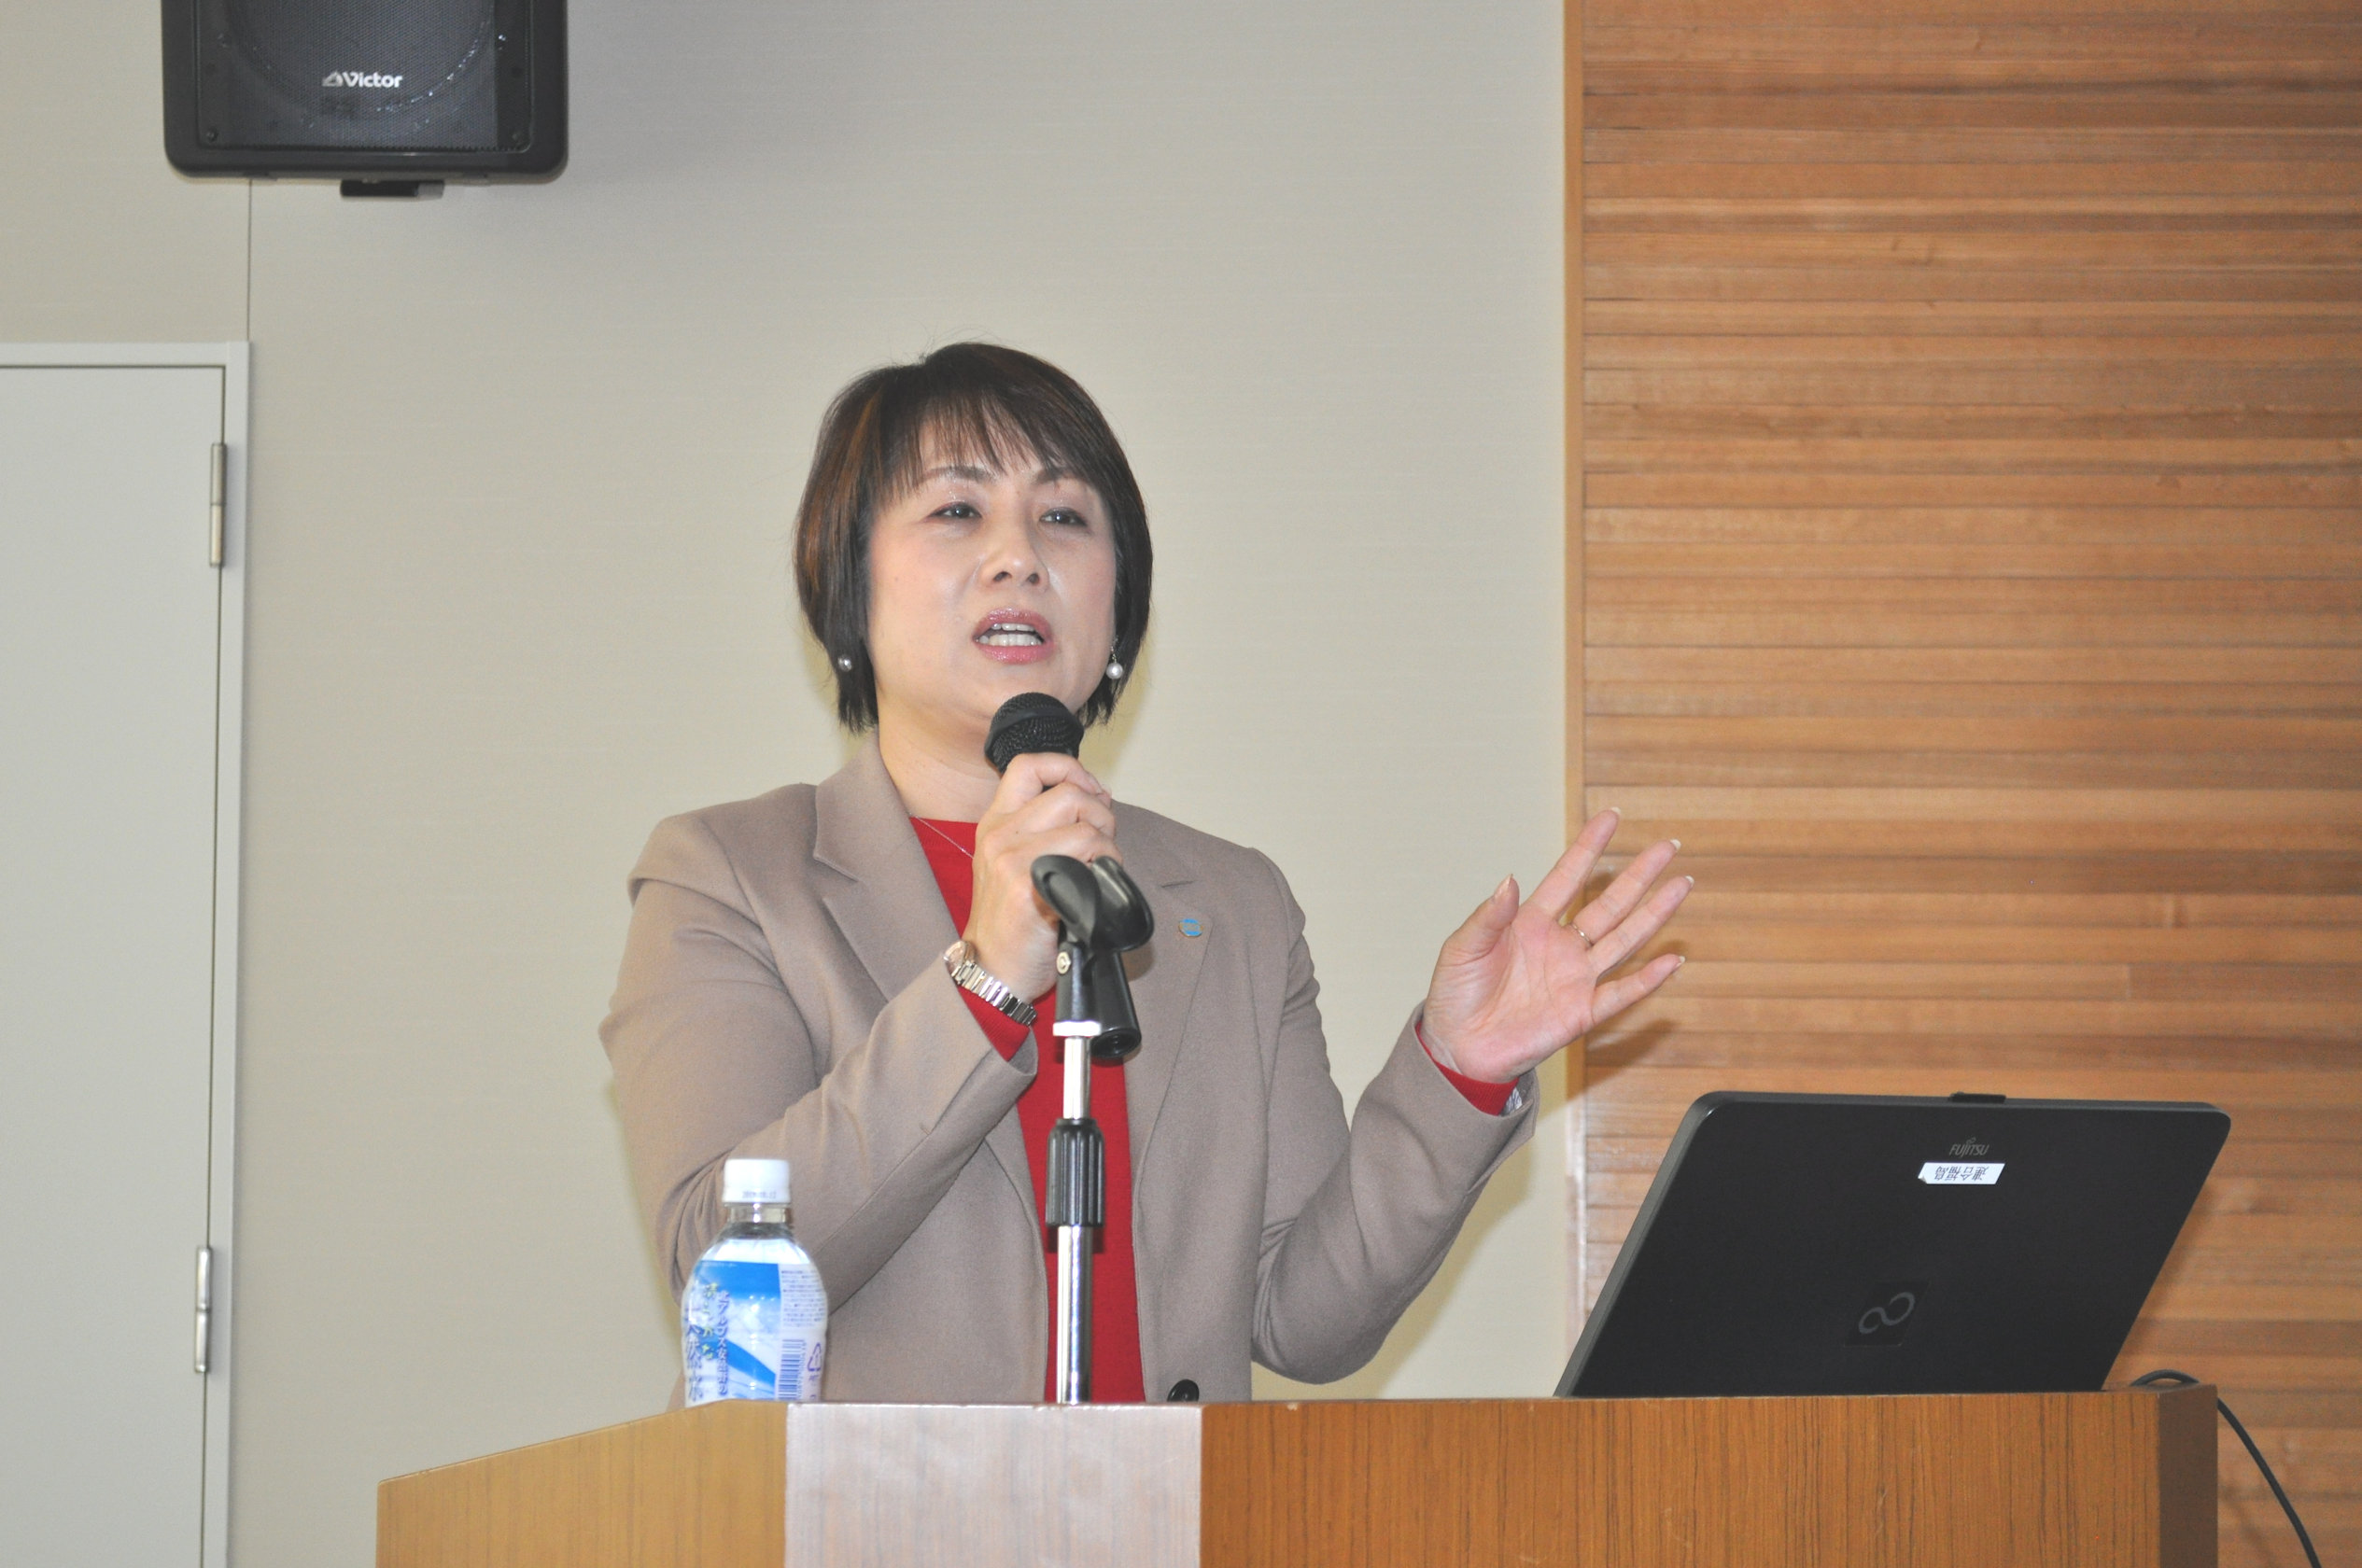 地方連合会初の女性会長に就任した、連合奈良・西田一美会長による講演